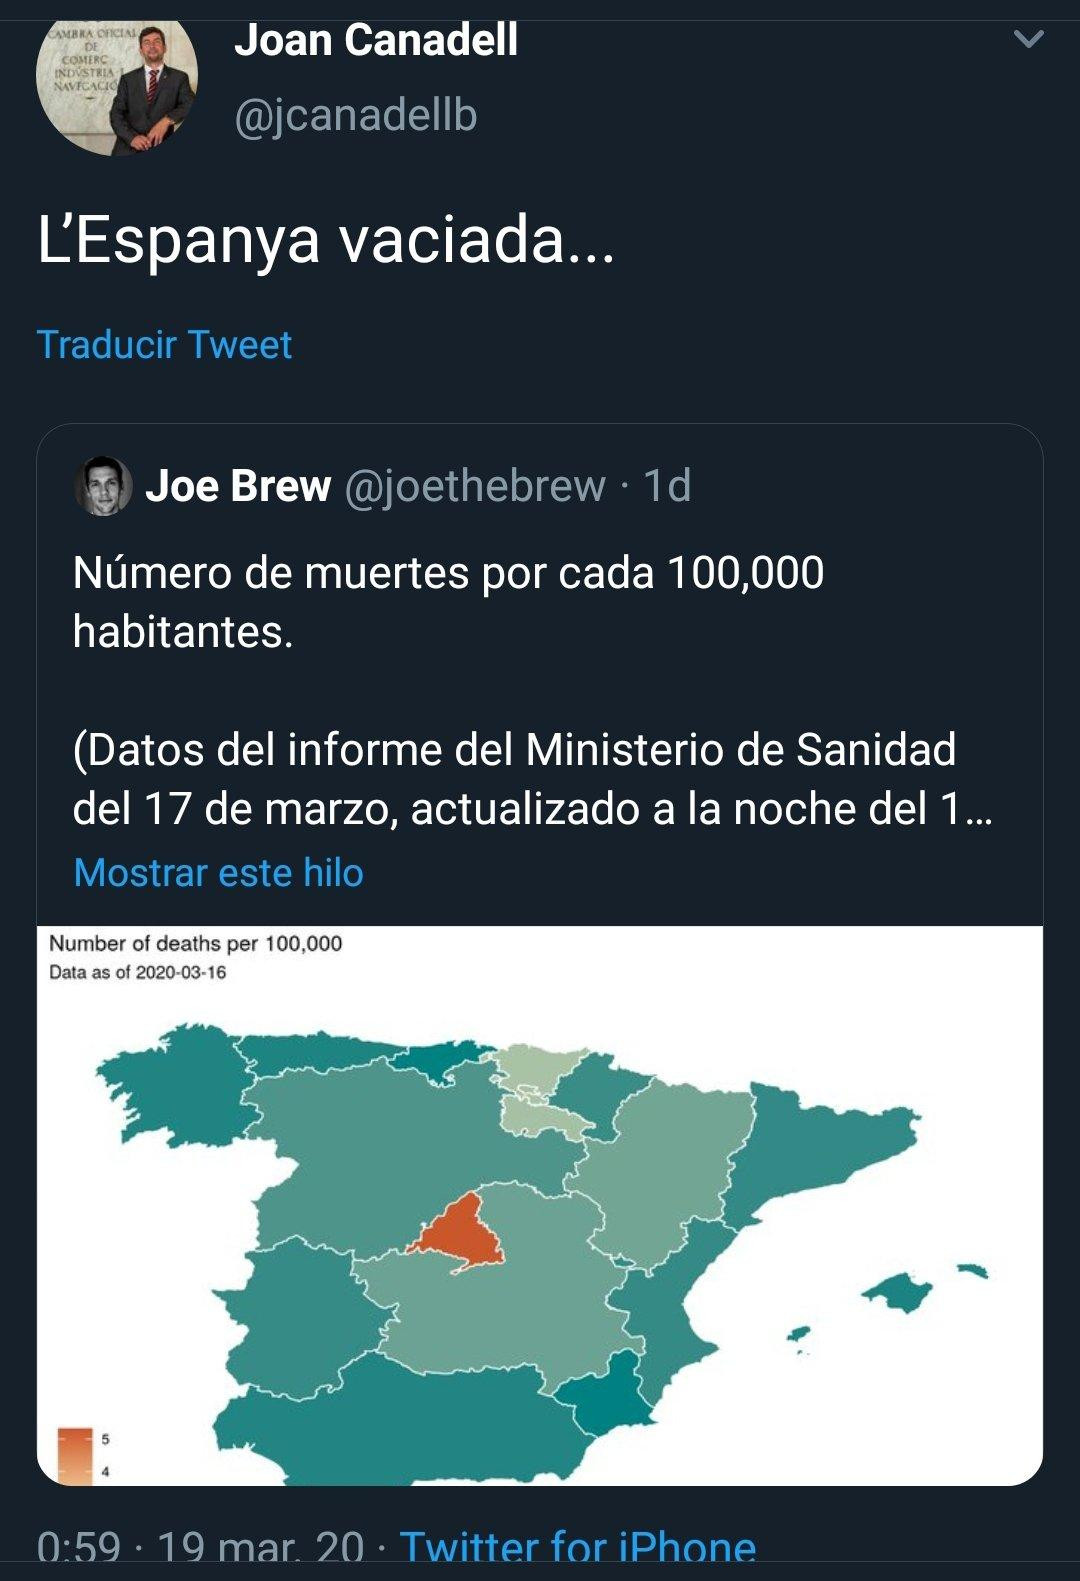 Captura de pantalla del tuit de Joan Canadell sobre España y el coronavirus